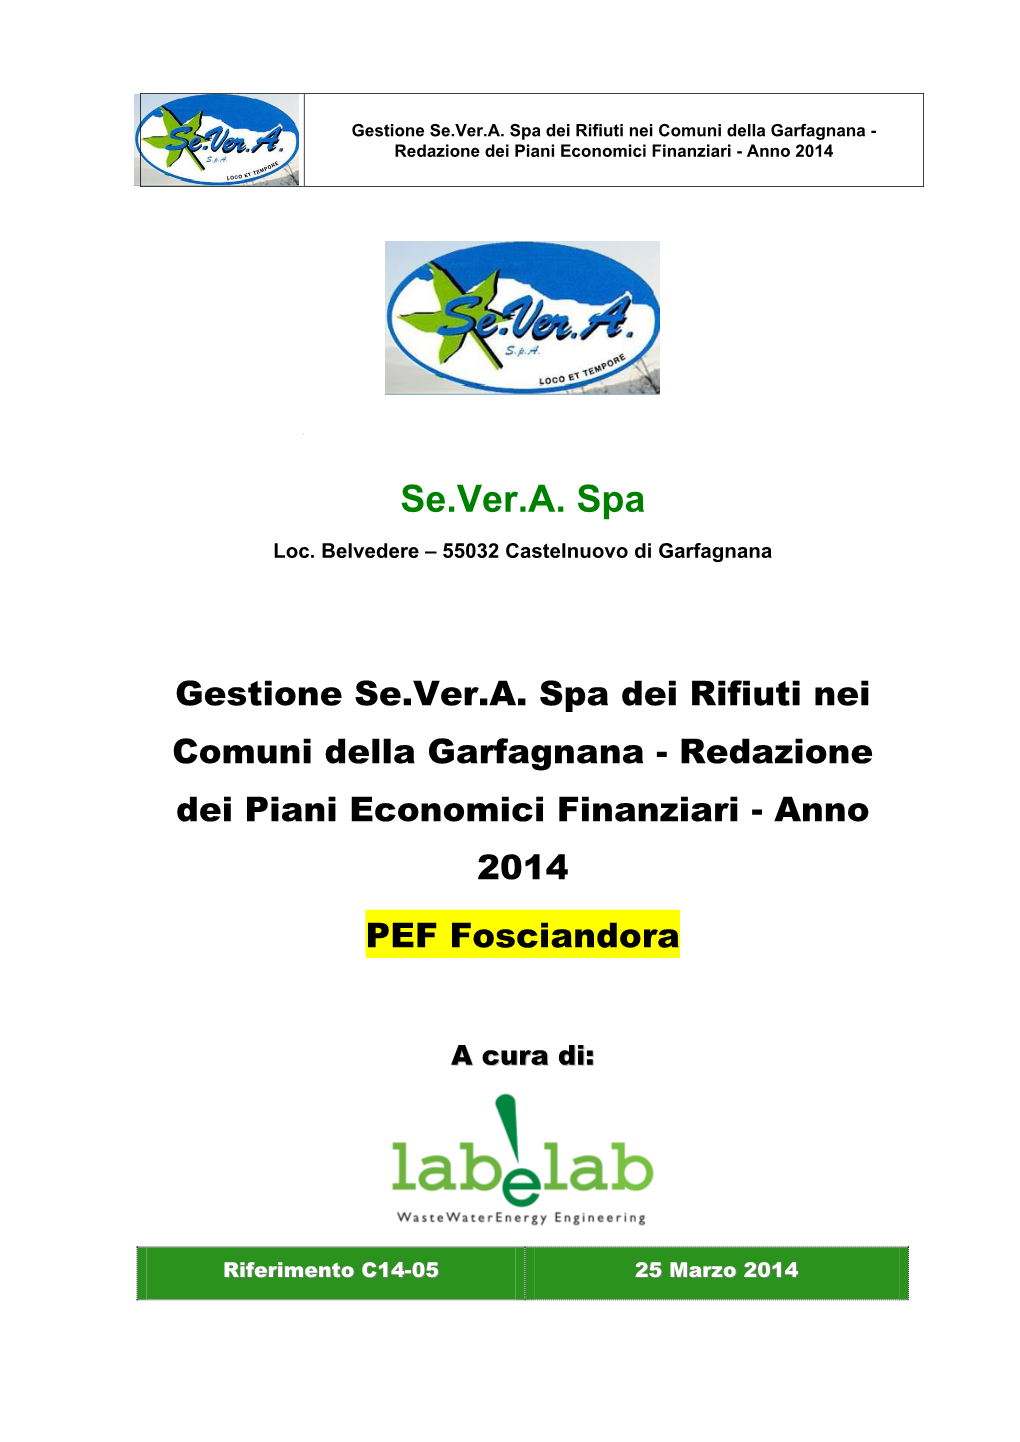 Se.Ver.A. Spa Dei Rifiuti Nei Comuni Della Garfagnana - Redazione Dei Piani Economici Finanziari - Anno 2014